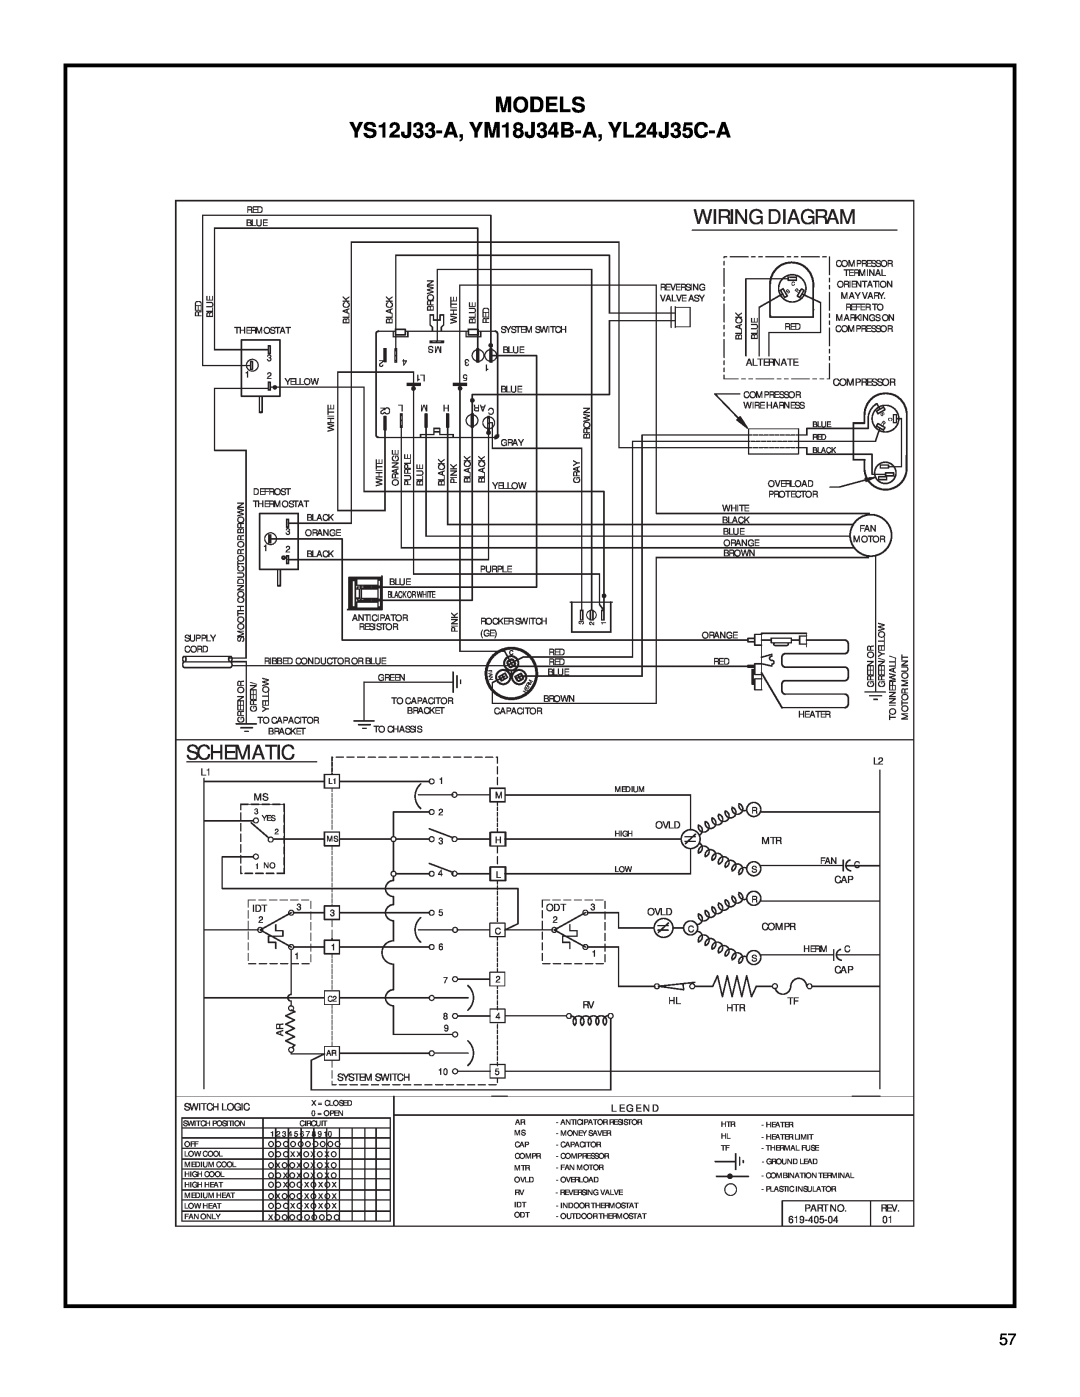 Friedrich 2003 service manual YS12J33-A, YM18J34B-A, YL24J35C-A, Models, Wiring Diagram, Schematic 